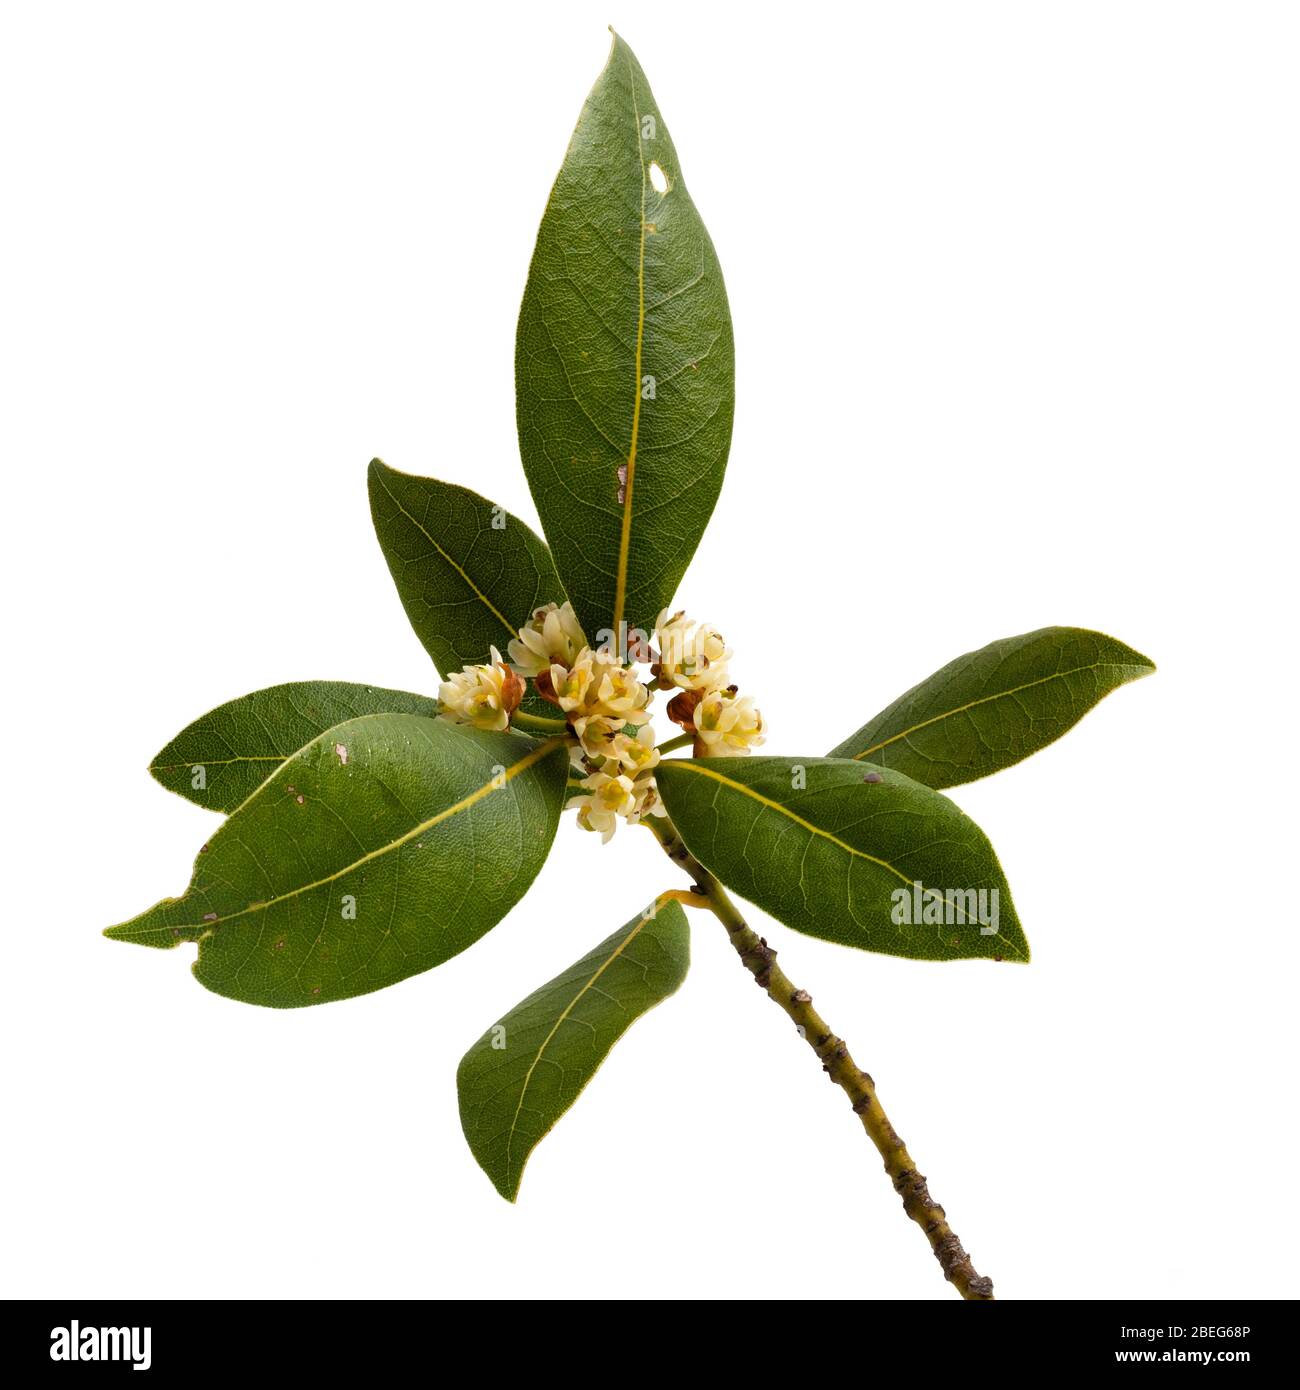 Fleurs printanières et FO;iage de l'herbe culinaire de l'arbre de baie verte, Laurus nobilis, sur un fond blanc Banque D'Images